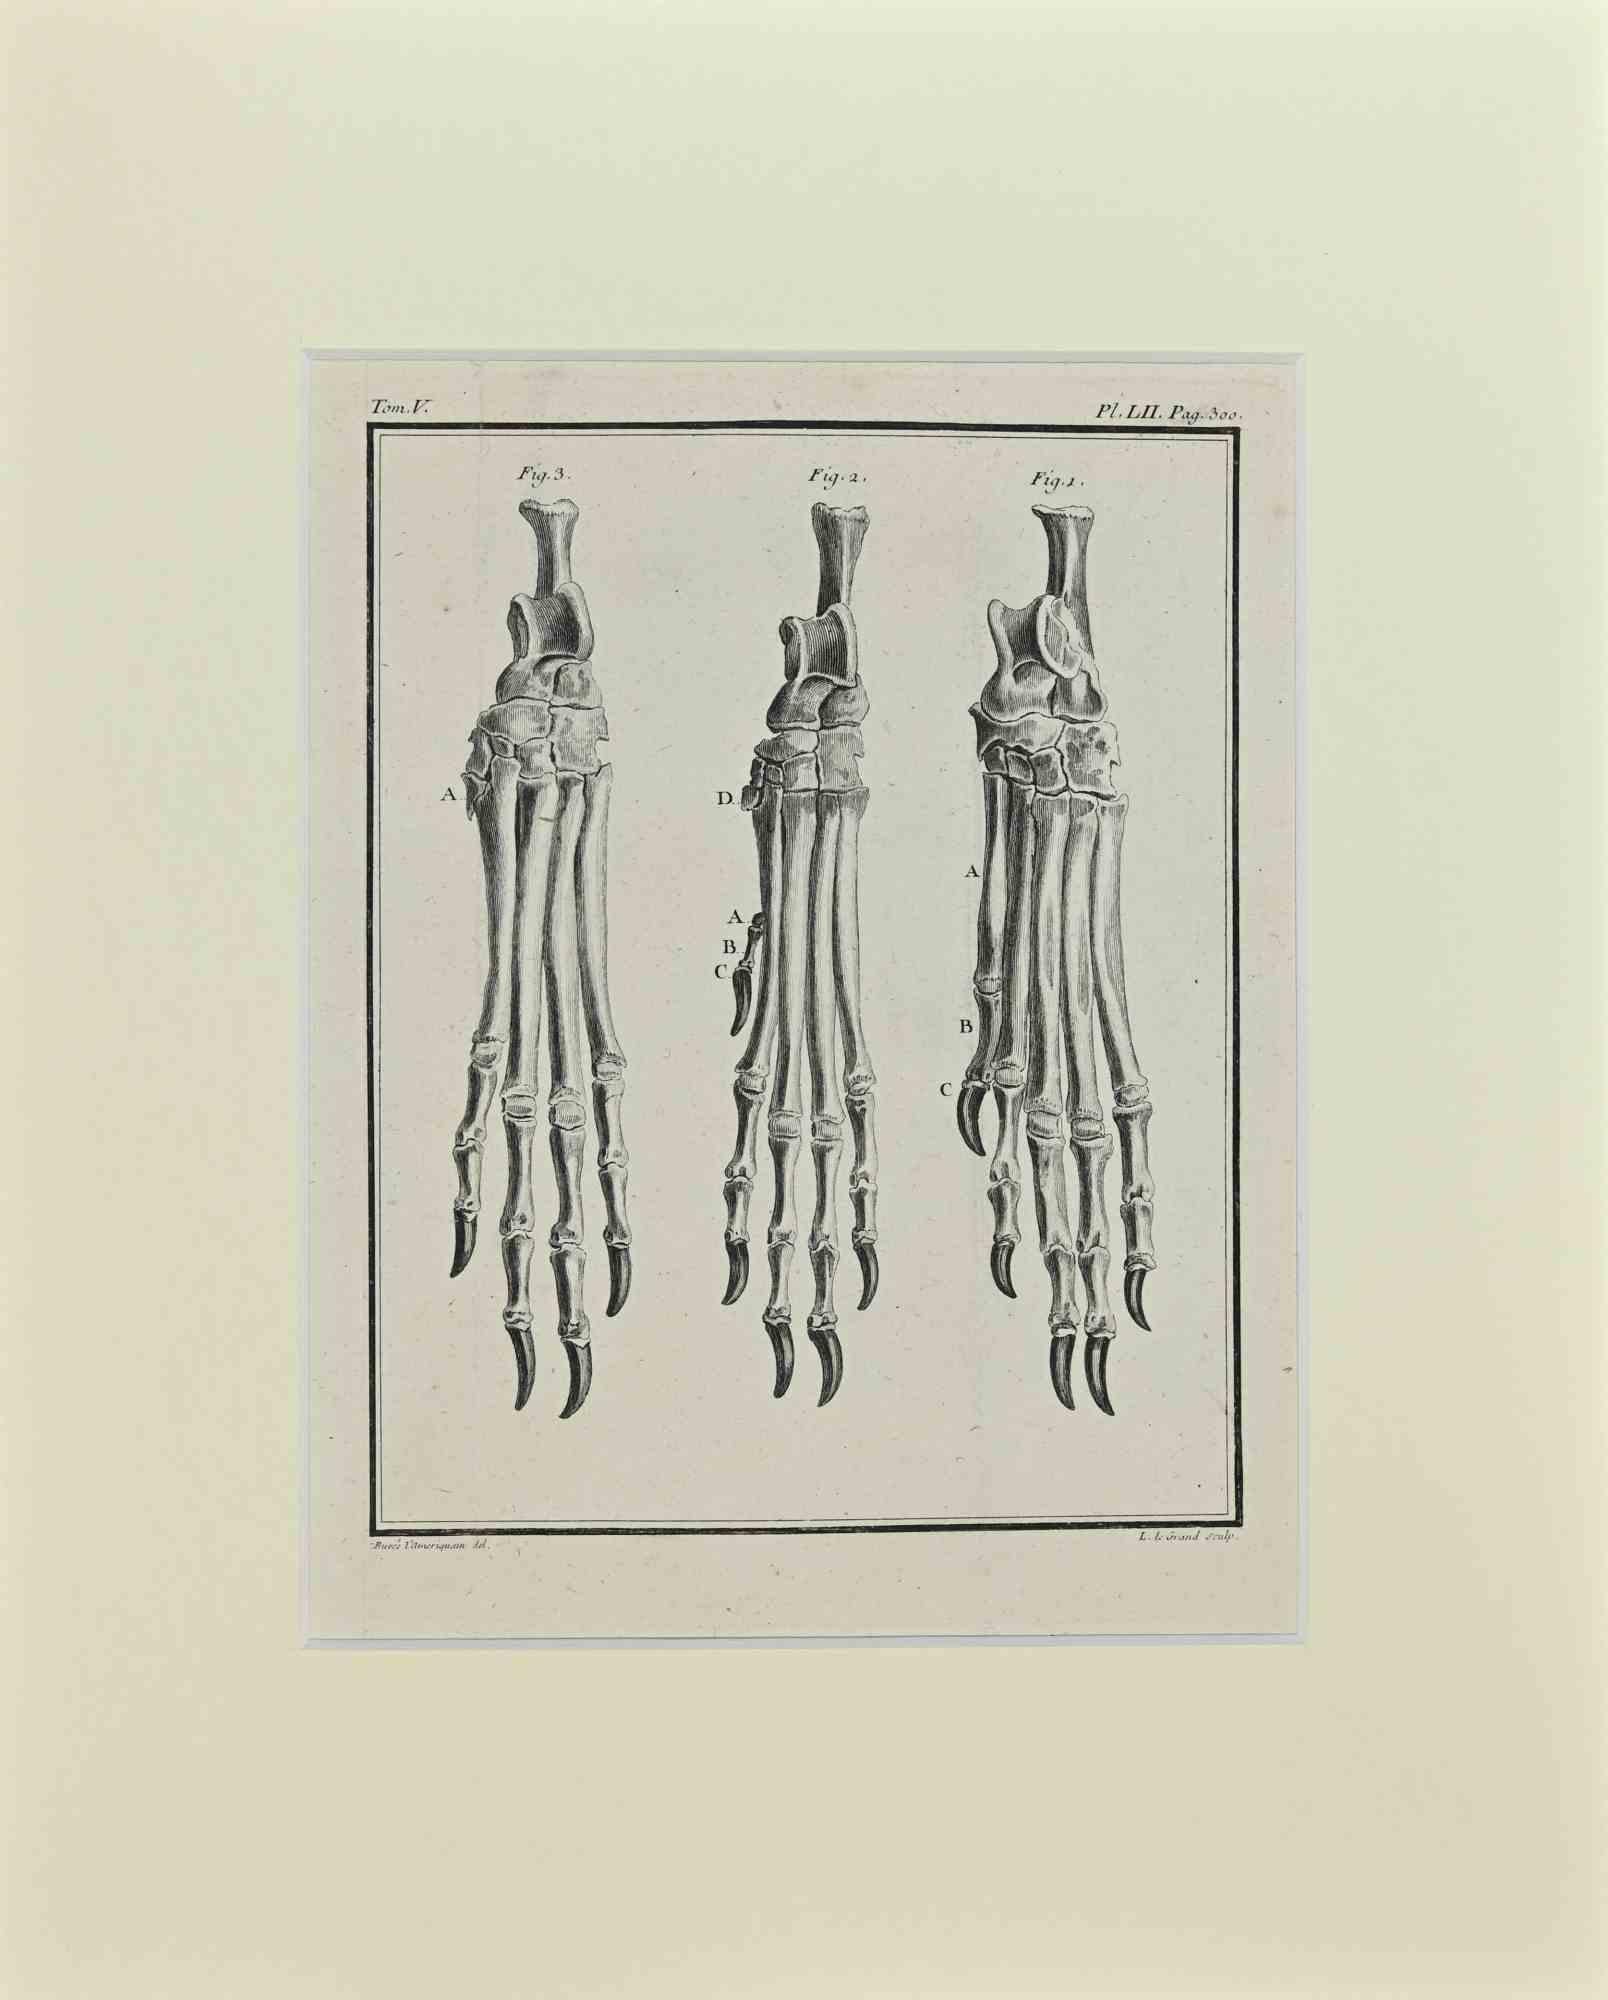 La Structure des os de pattes d'animaux est une œuvre d'art réalisée par Buvée l'Américain en 1771.  

Gravure à l'eau-forte B./W. sur papier ivoire. Signé sur la plaque dans la marge inférieure gauche.

L'œuvre est collée sur du carton. Dimensions